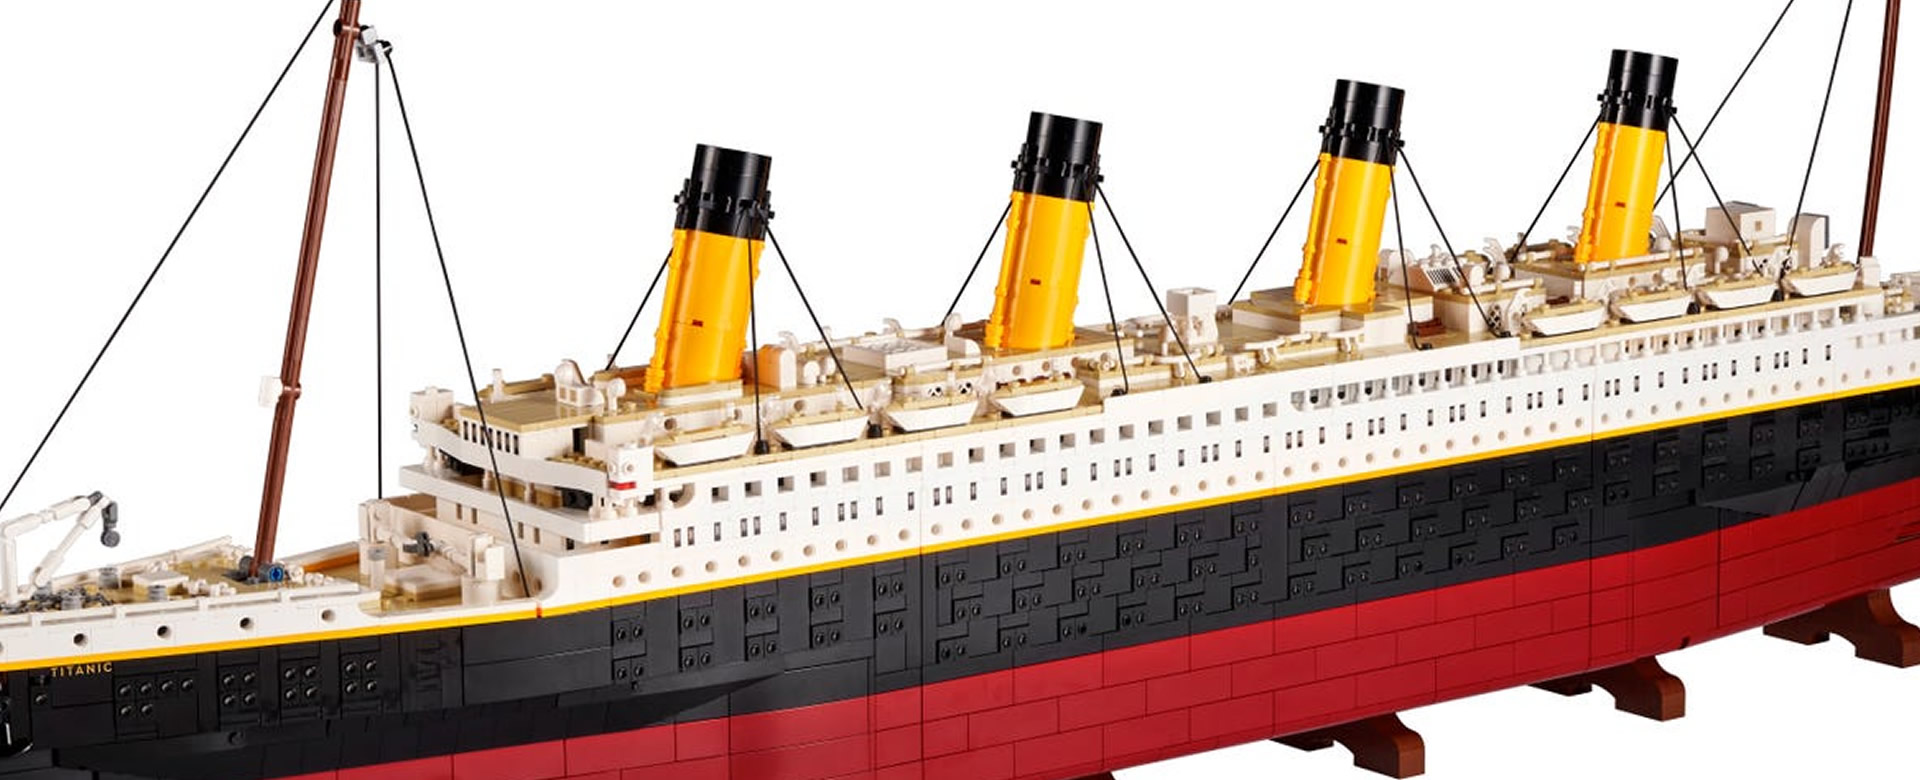 Contradicción Medalla Inconveniencia Fabrican una reproducción en juguetes del famoso barco Titanic